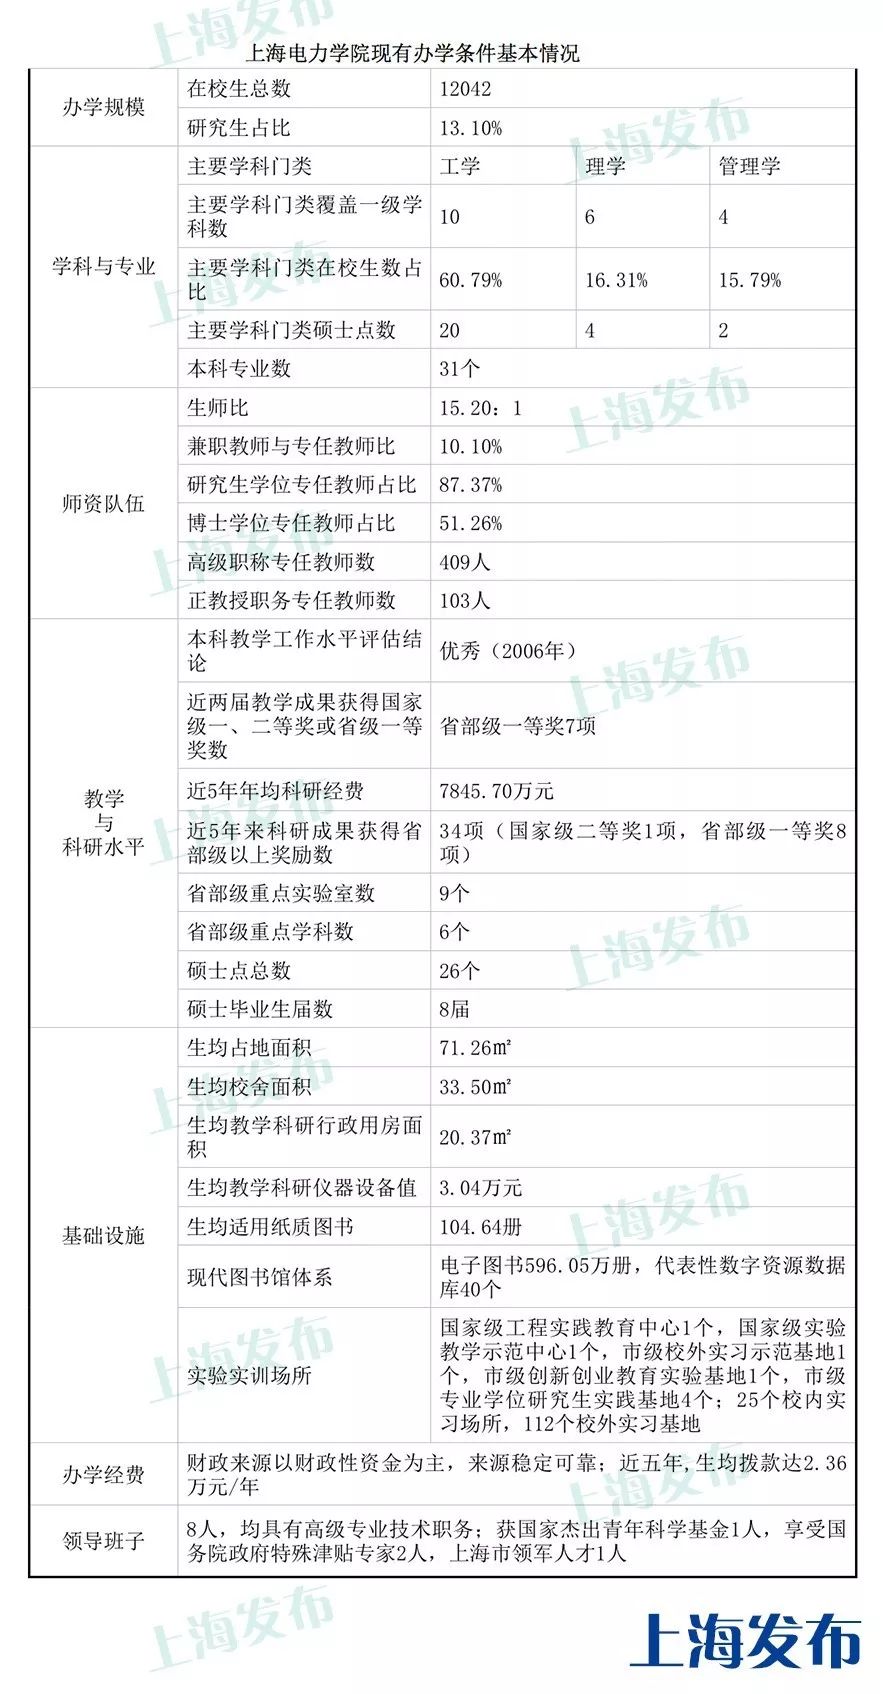 【公示】上海电力学院拟申报更名为上海电力大